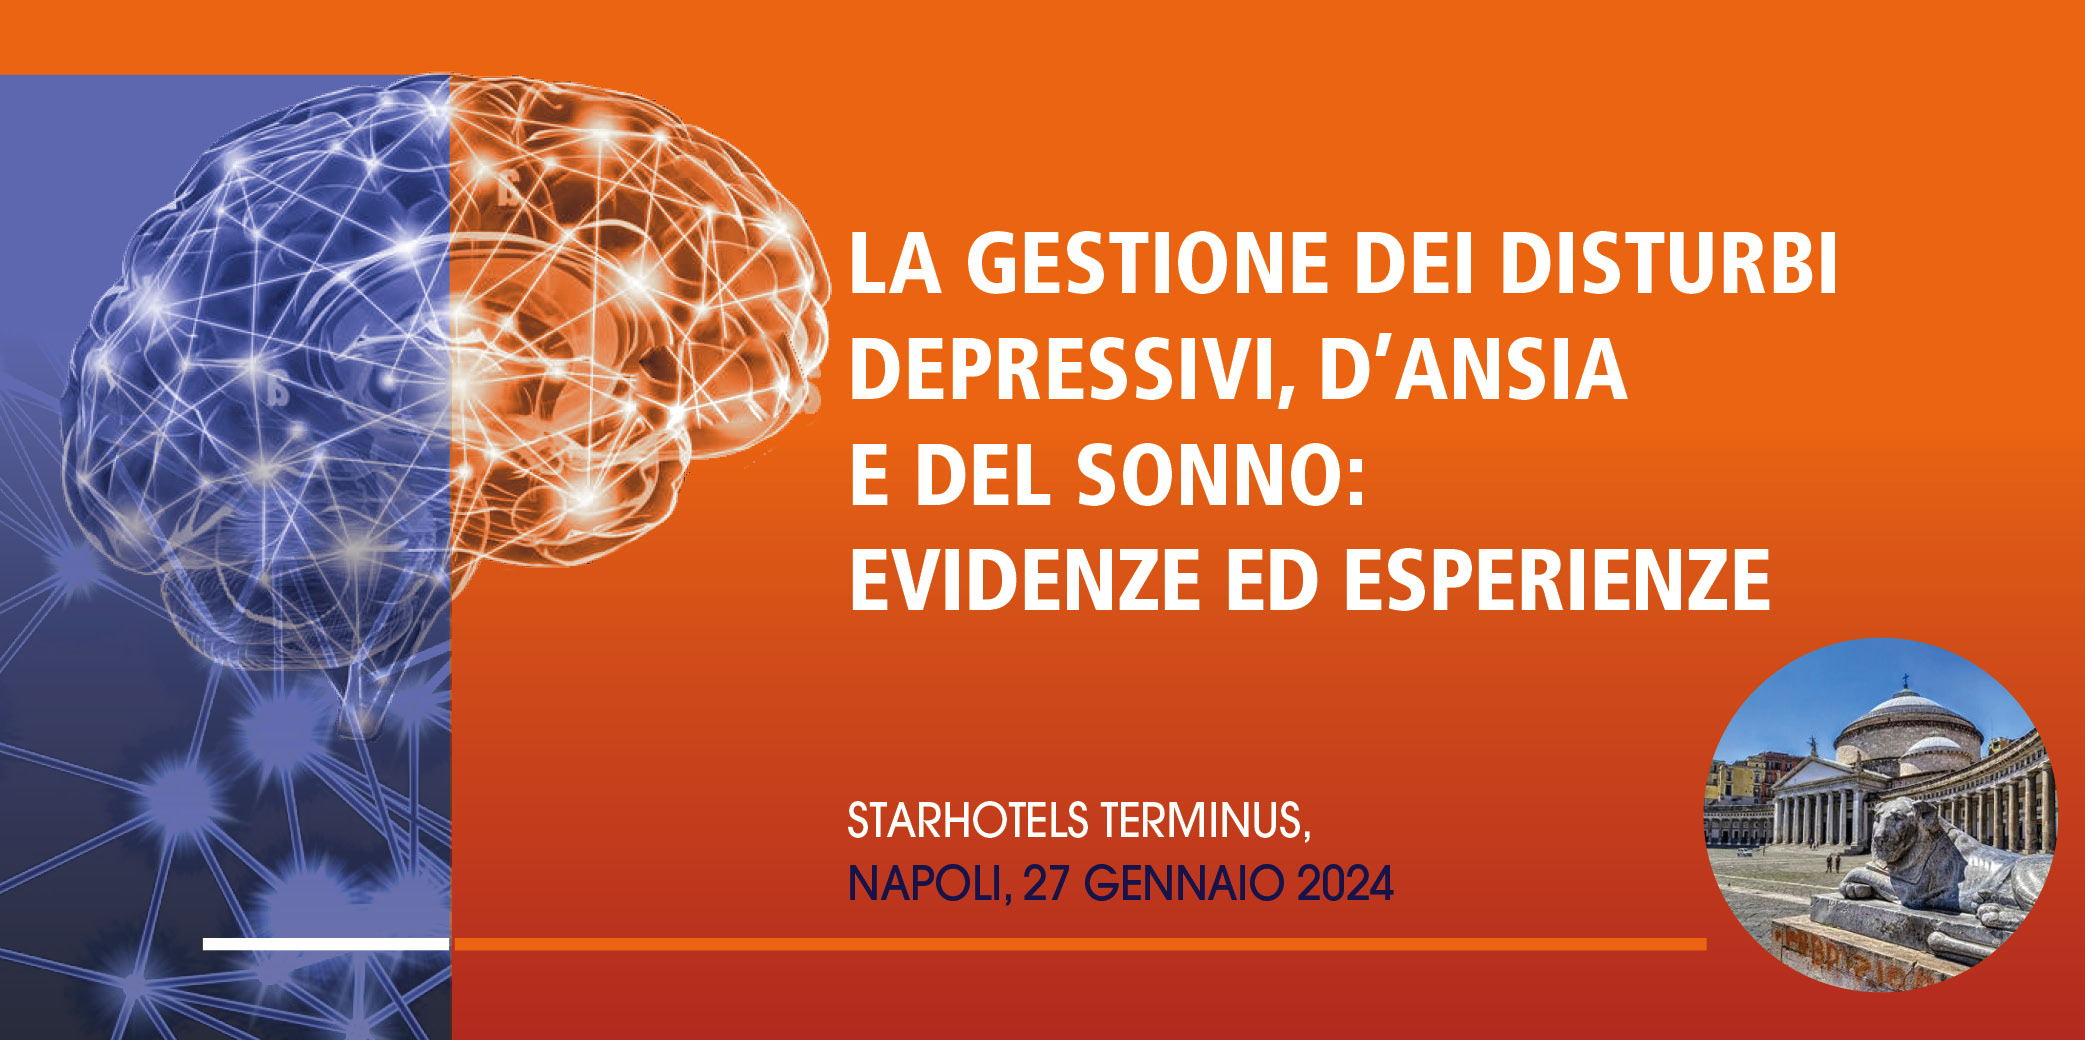 La gestione dei disturbi depressivi, d’ansia e del sonno: evidenze ed esperienze – Napoli, 27 Gennaio 2024